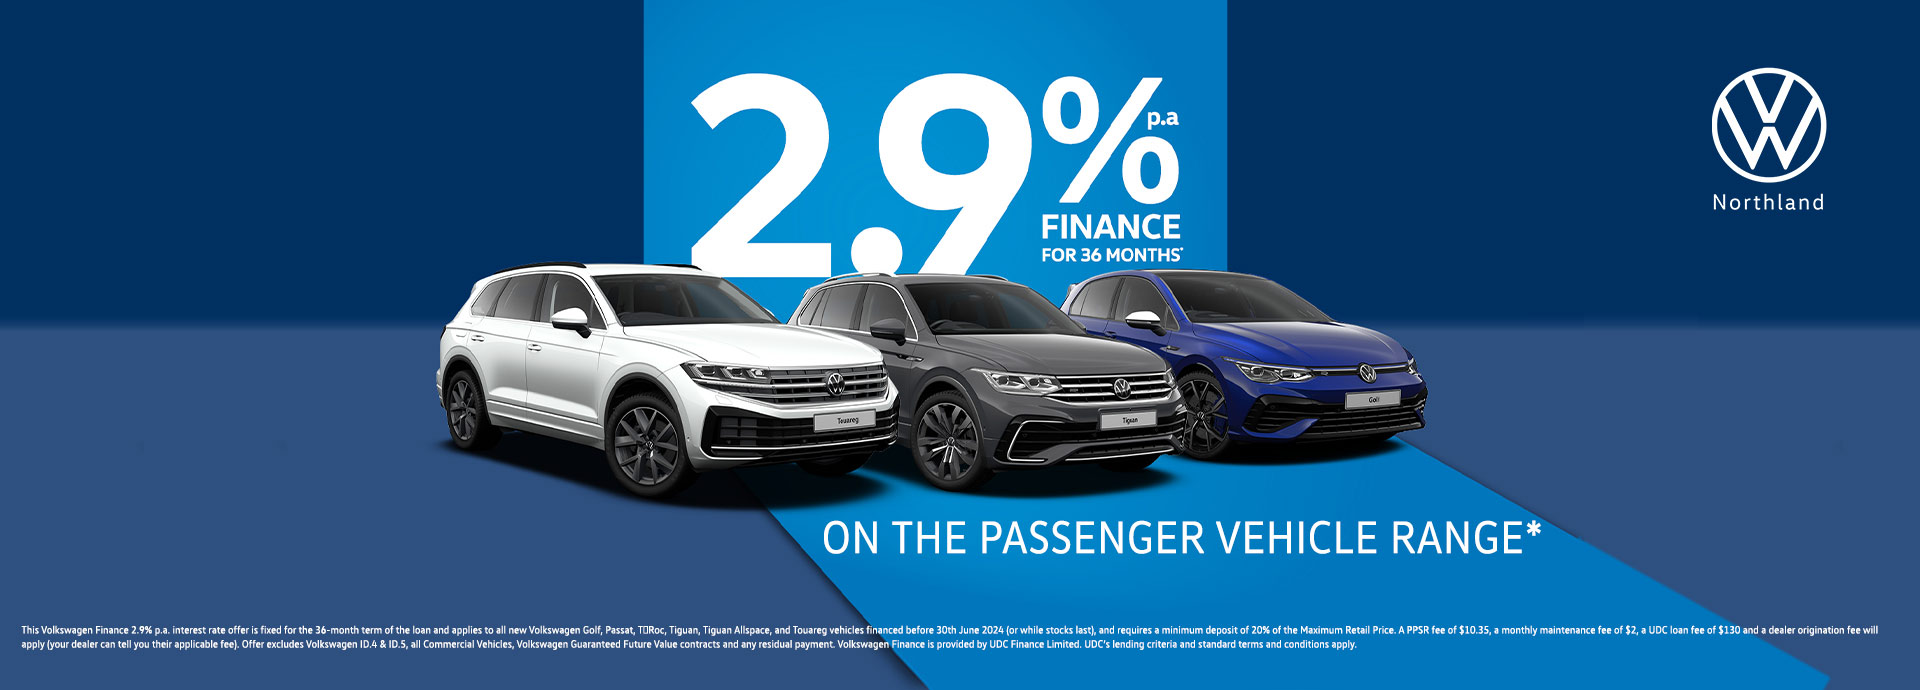 Passenger 2.9% finance offer 